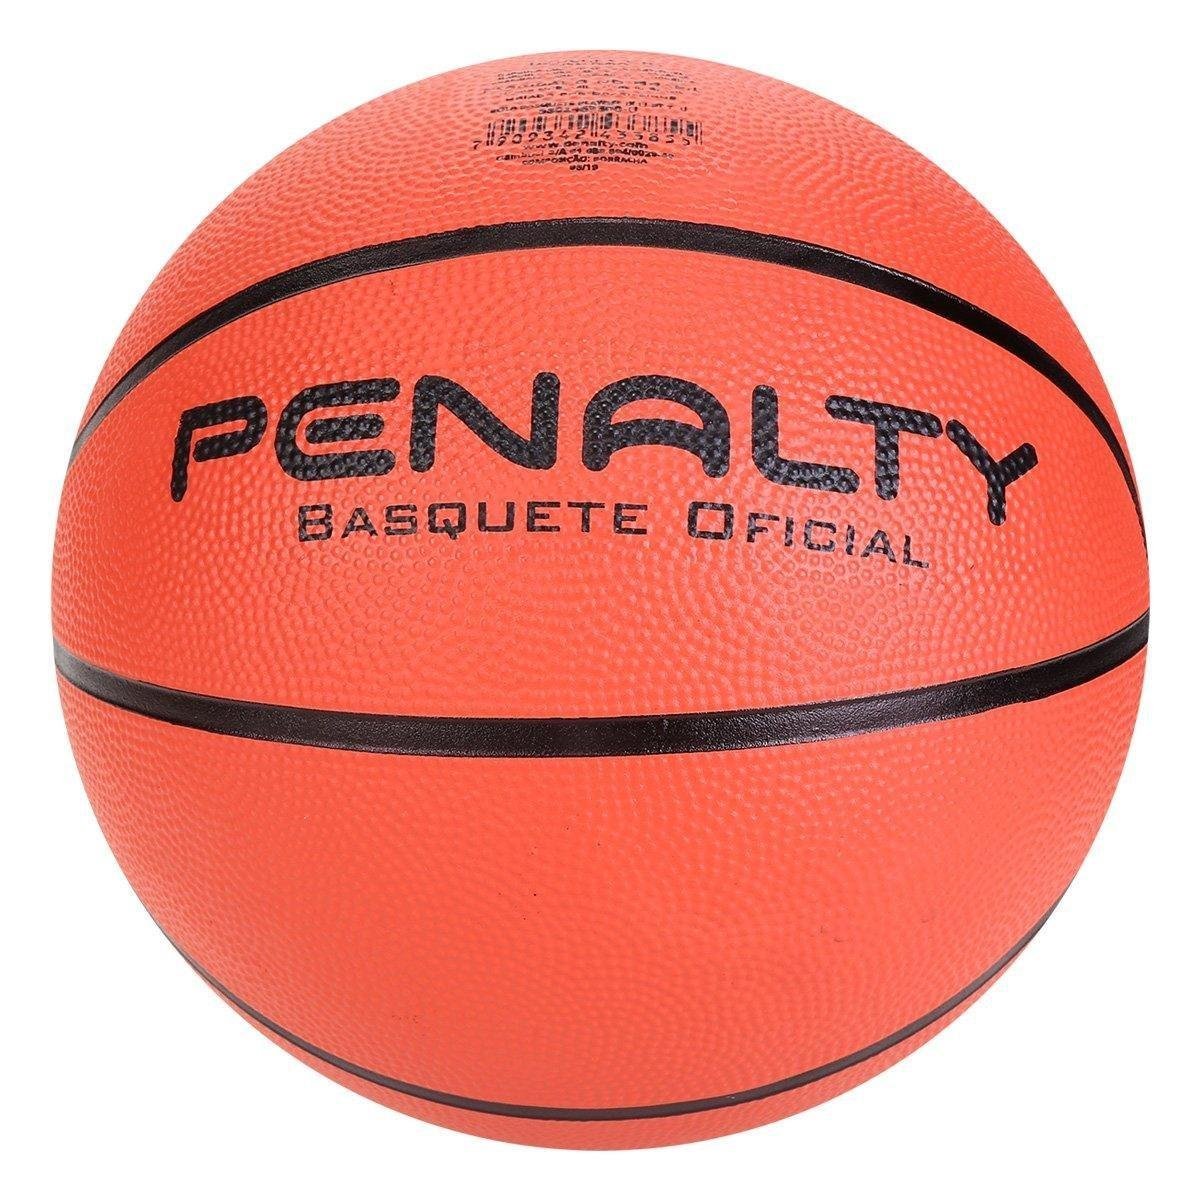 Bola de Basquete Penalty Playoff IX Original - 530146